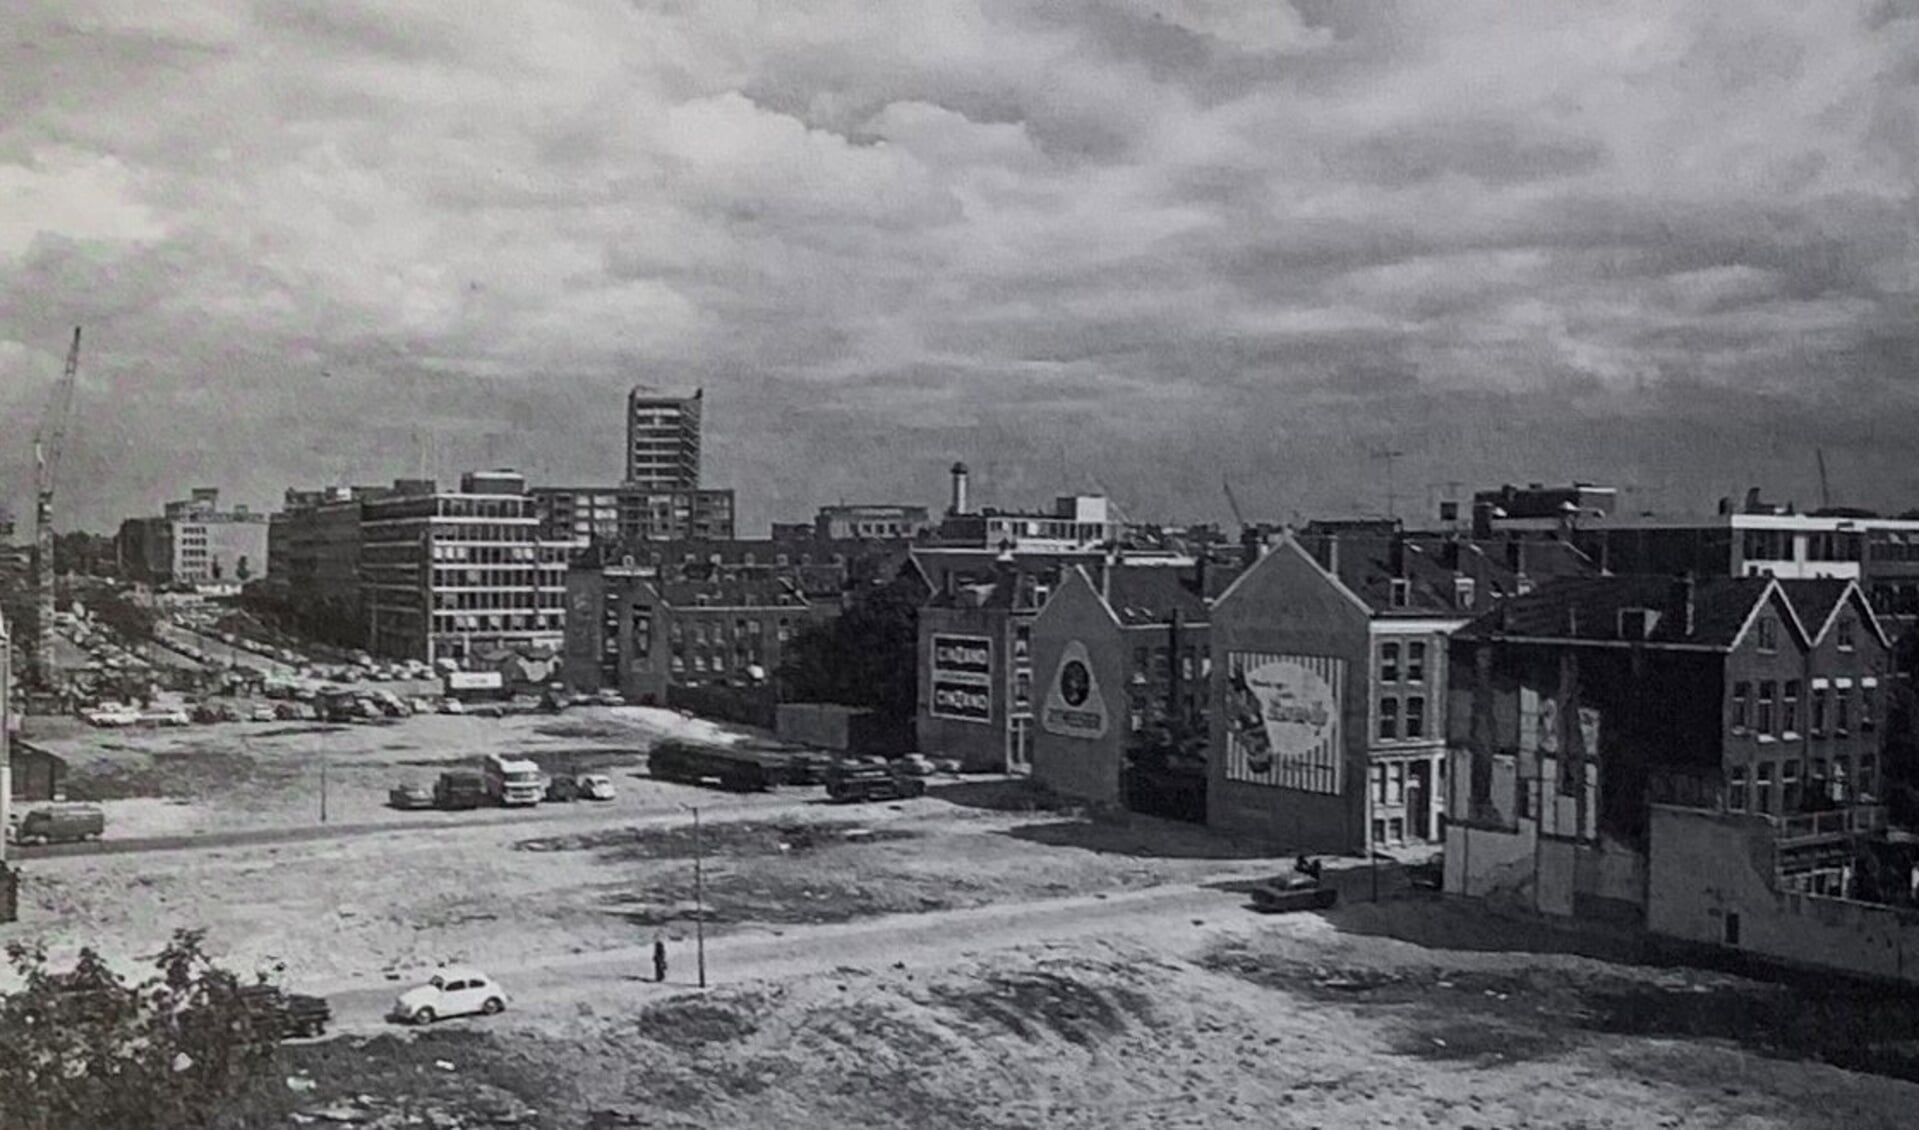 De doorbraak voor de Westblaak in 1962 vanuit oostelijke richting. Foto: Bart Hofmeester